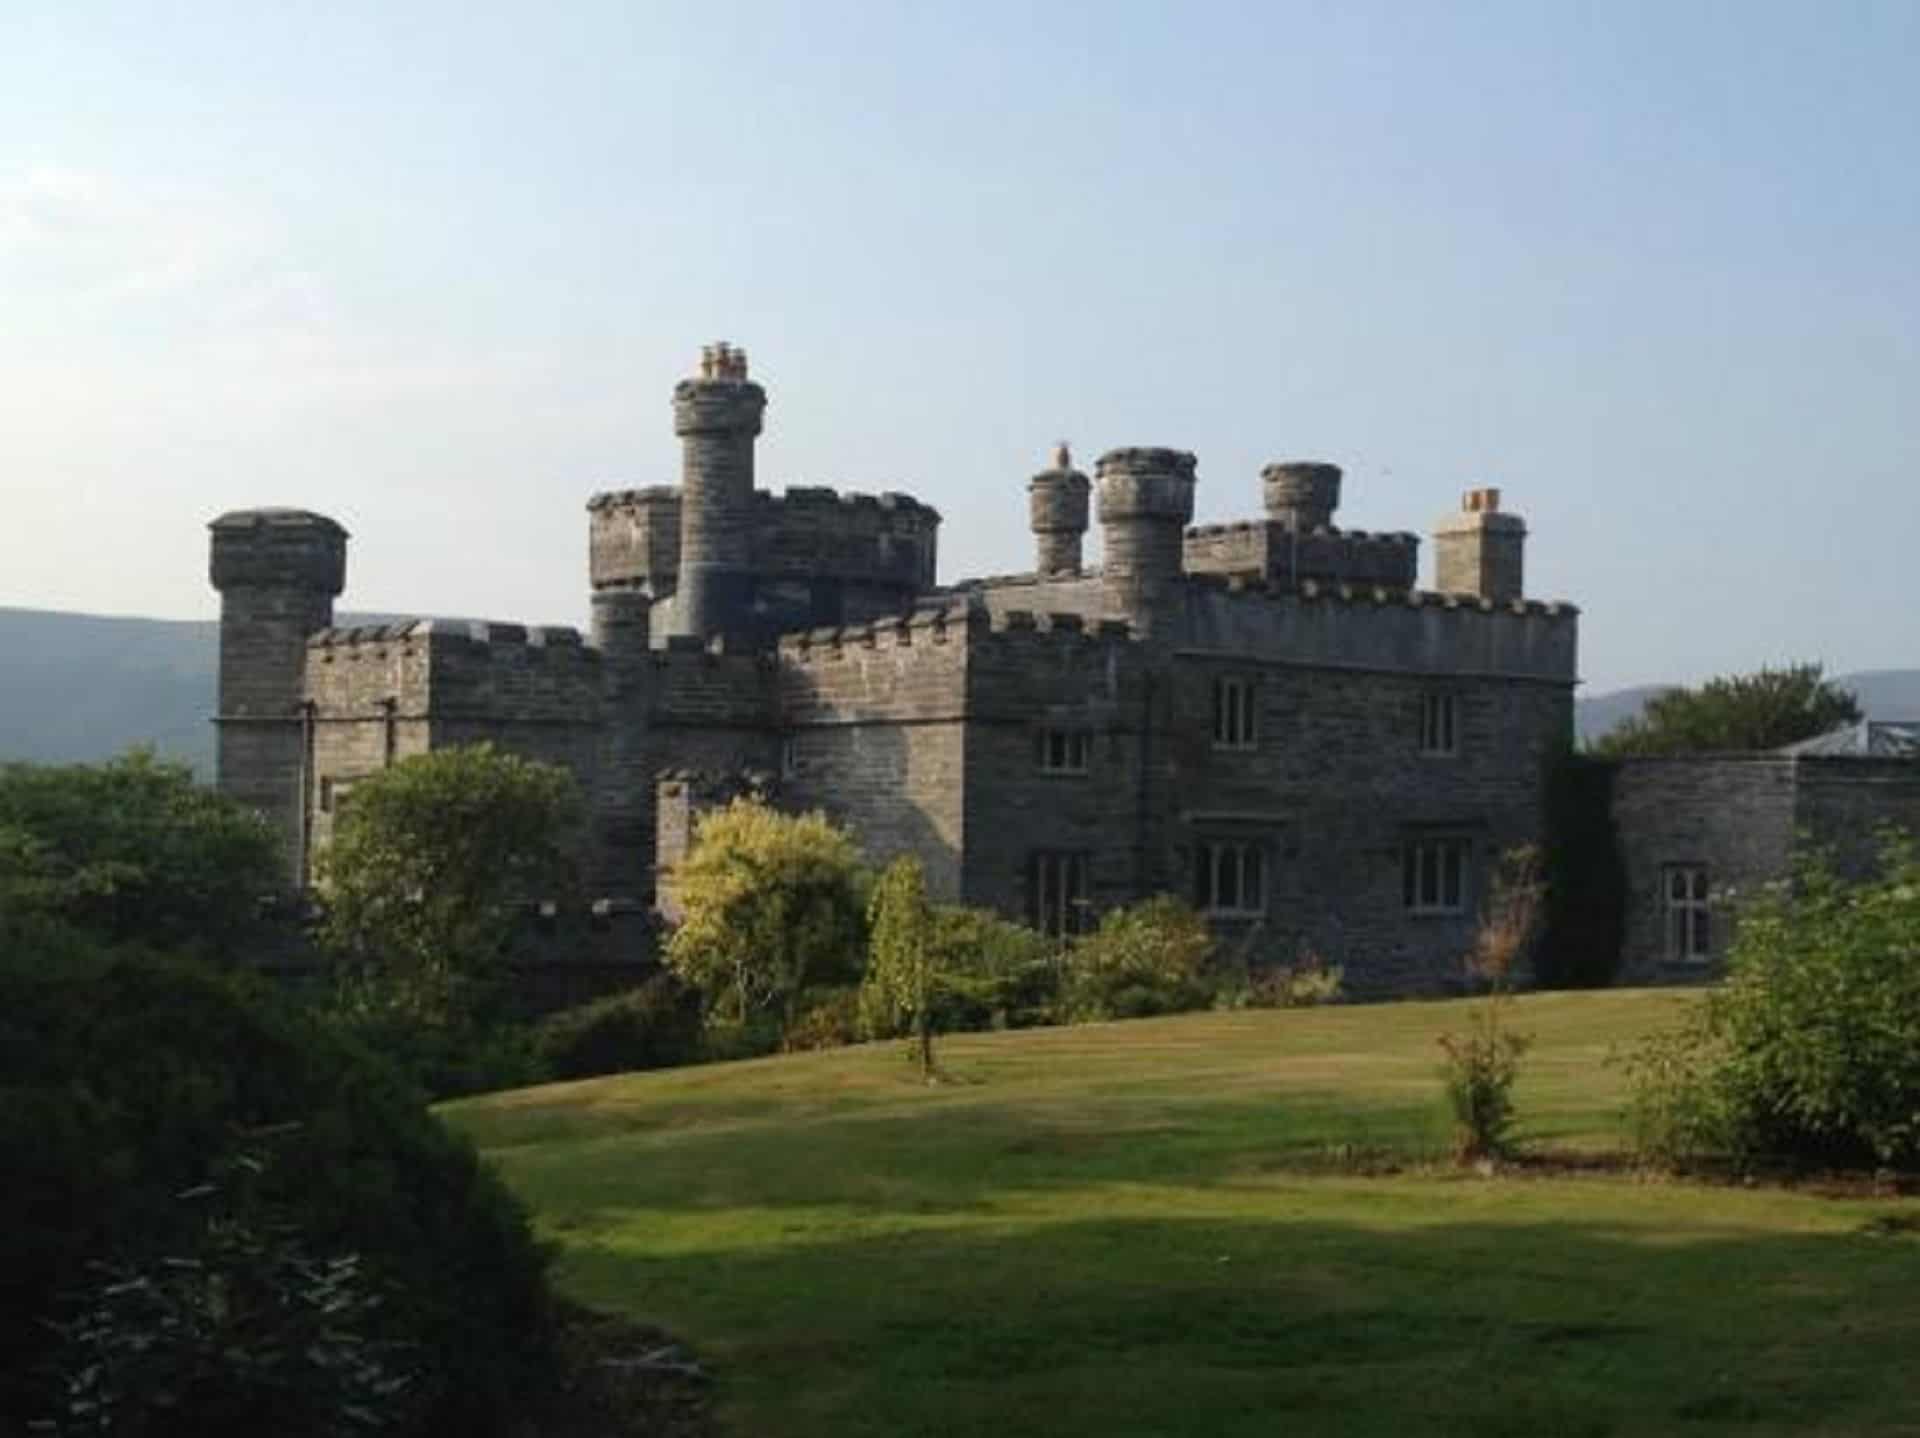 Glandyfi Castle in UK